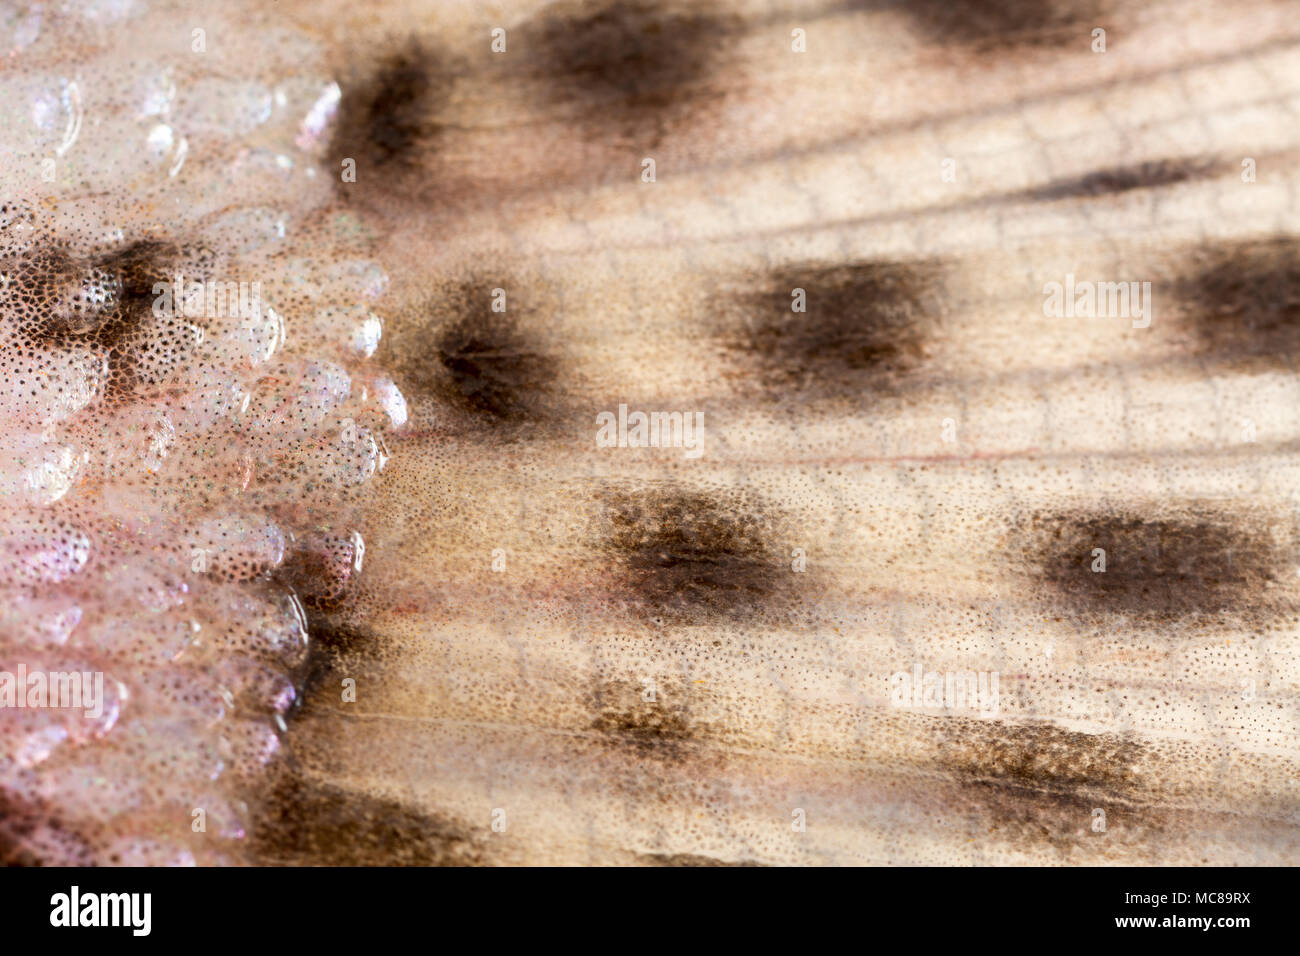 Eine Nahaufnahme der Skalen, wo Sie die kaudale, oder Schwanz, Fin auf einem Regenbogen Forellen, die in den UK Fliege Fischen gefangen wurde. Fische Flossen sind aus Stockfoto